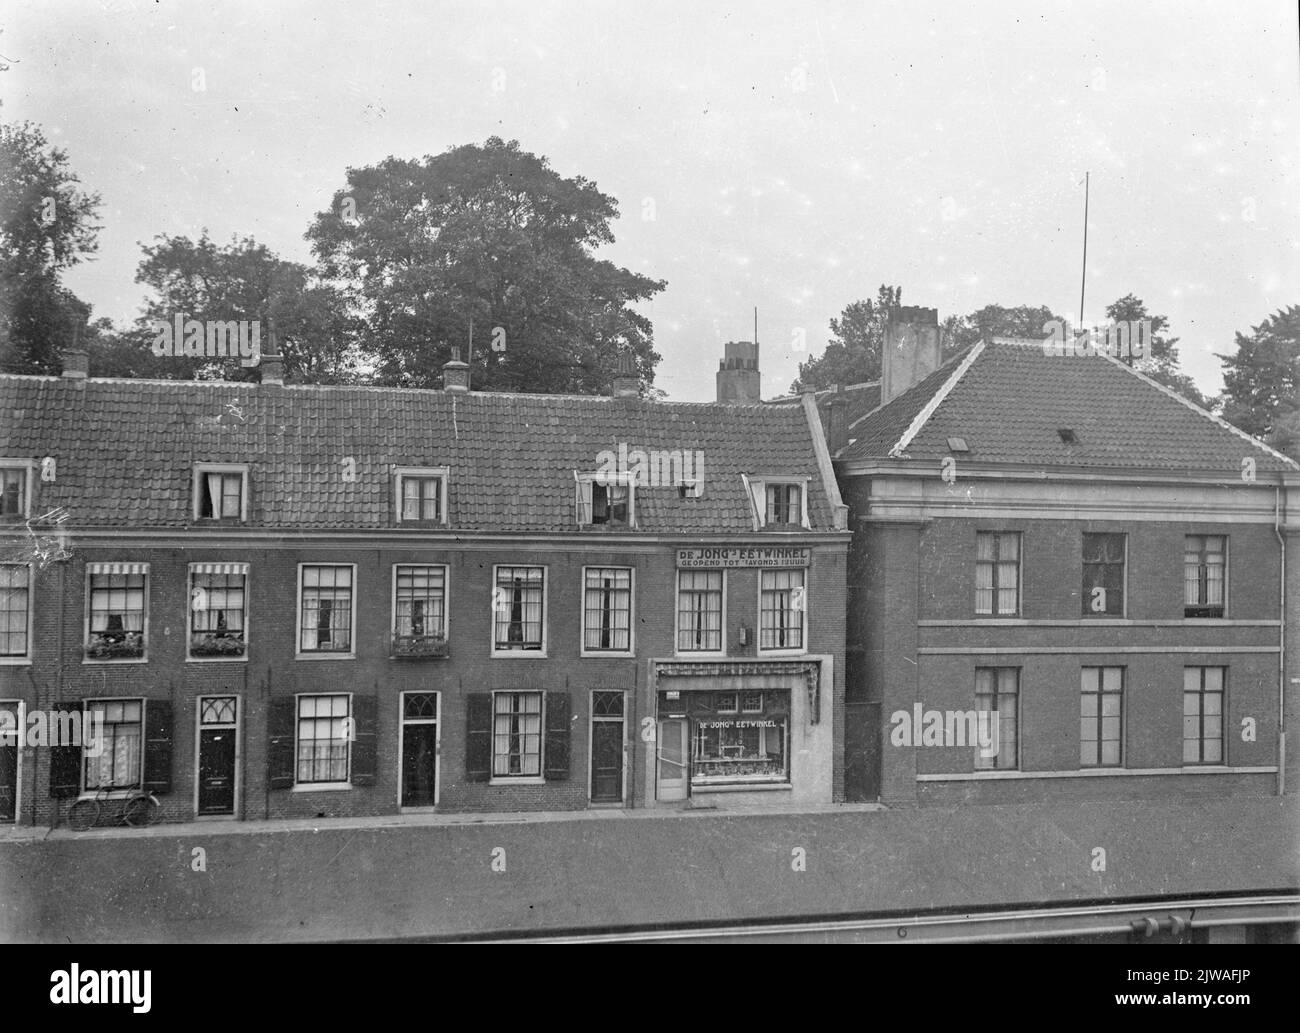 Vista delle facciate delle Case Vredenburg 52 (Centrale) - più in alto a Utrecht; a destra la parete laterale della Hoekhuis Rijnkade 12.N.B. Le case (precedentemente appartenenti a Rijnstraat) sono state demolite nell'ottobre 1937 per l'espansione dei Jaarbeurs. Foto Stock